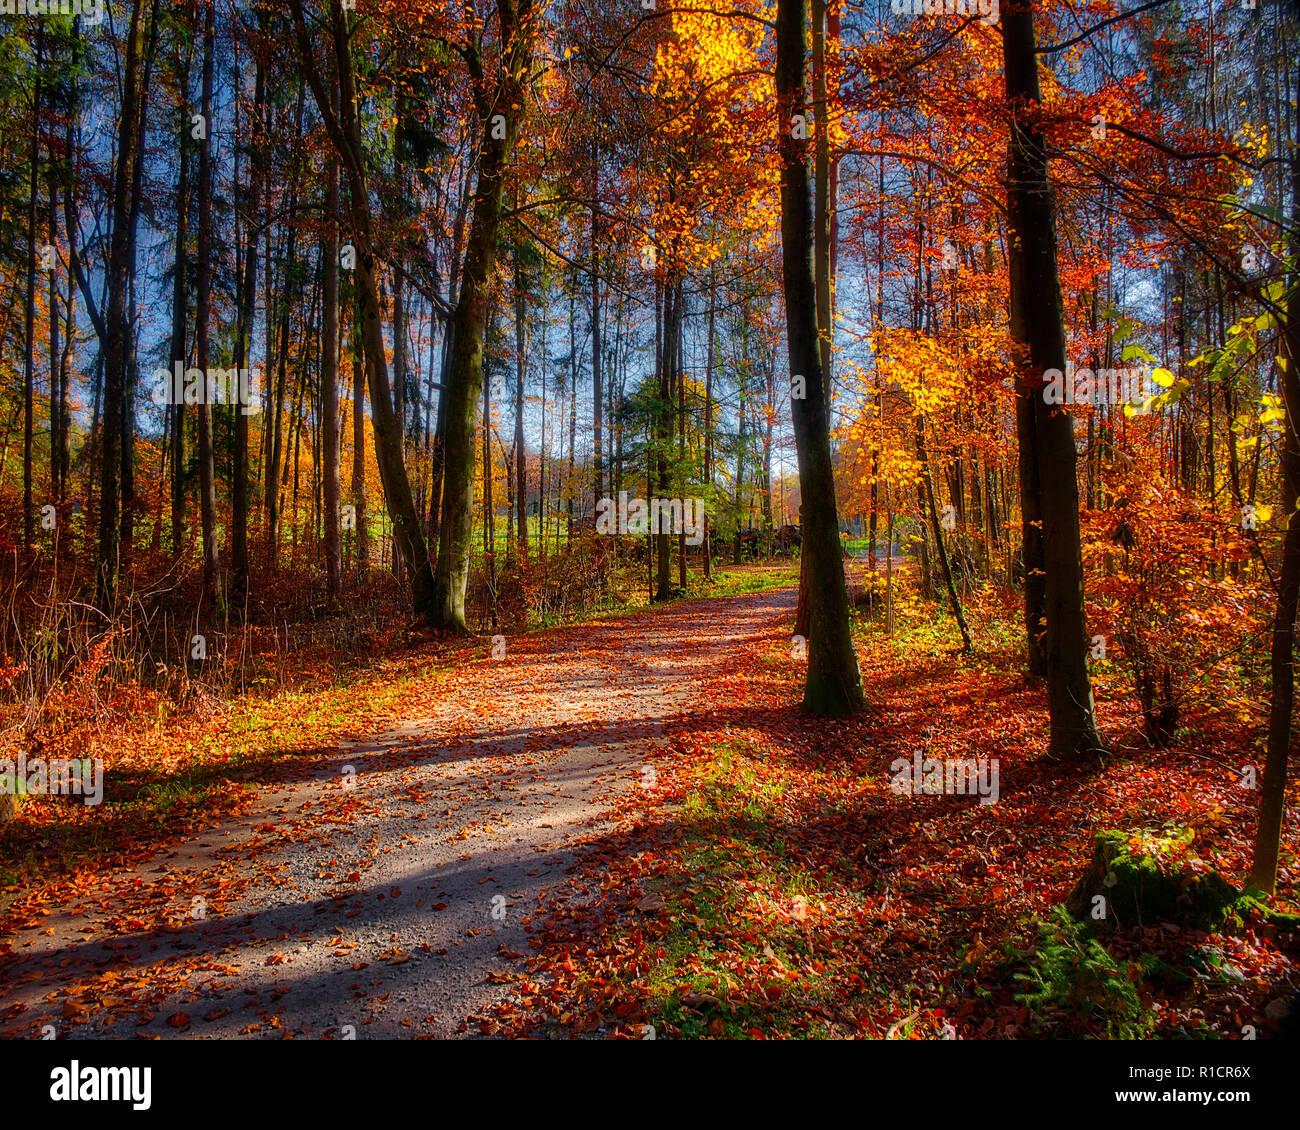 DE - BAVARIA : chemin forestier près de l'automne Moralt Alm, Bad Tölz (image HDR) Banque D'Images